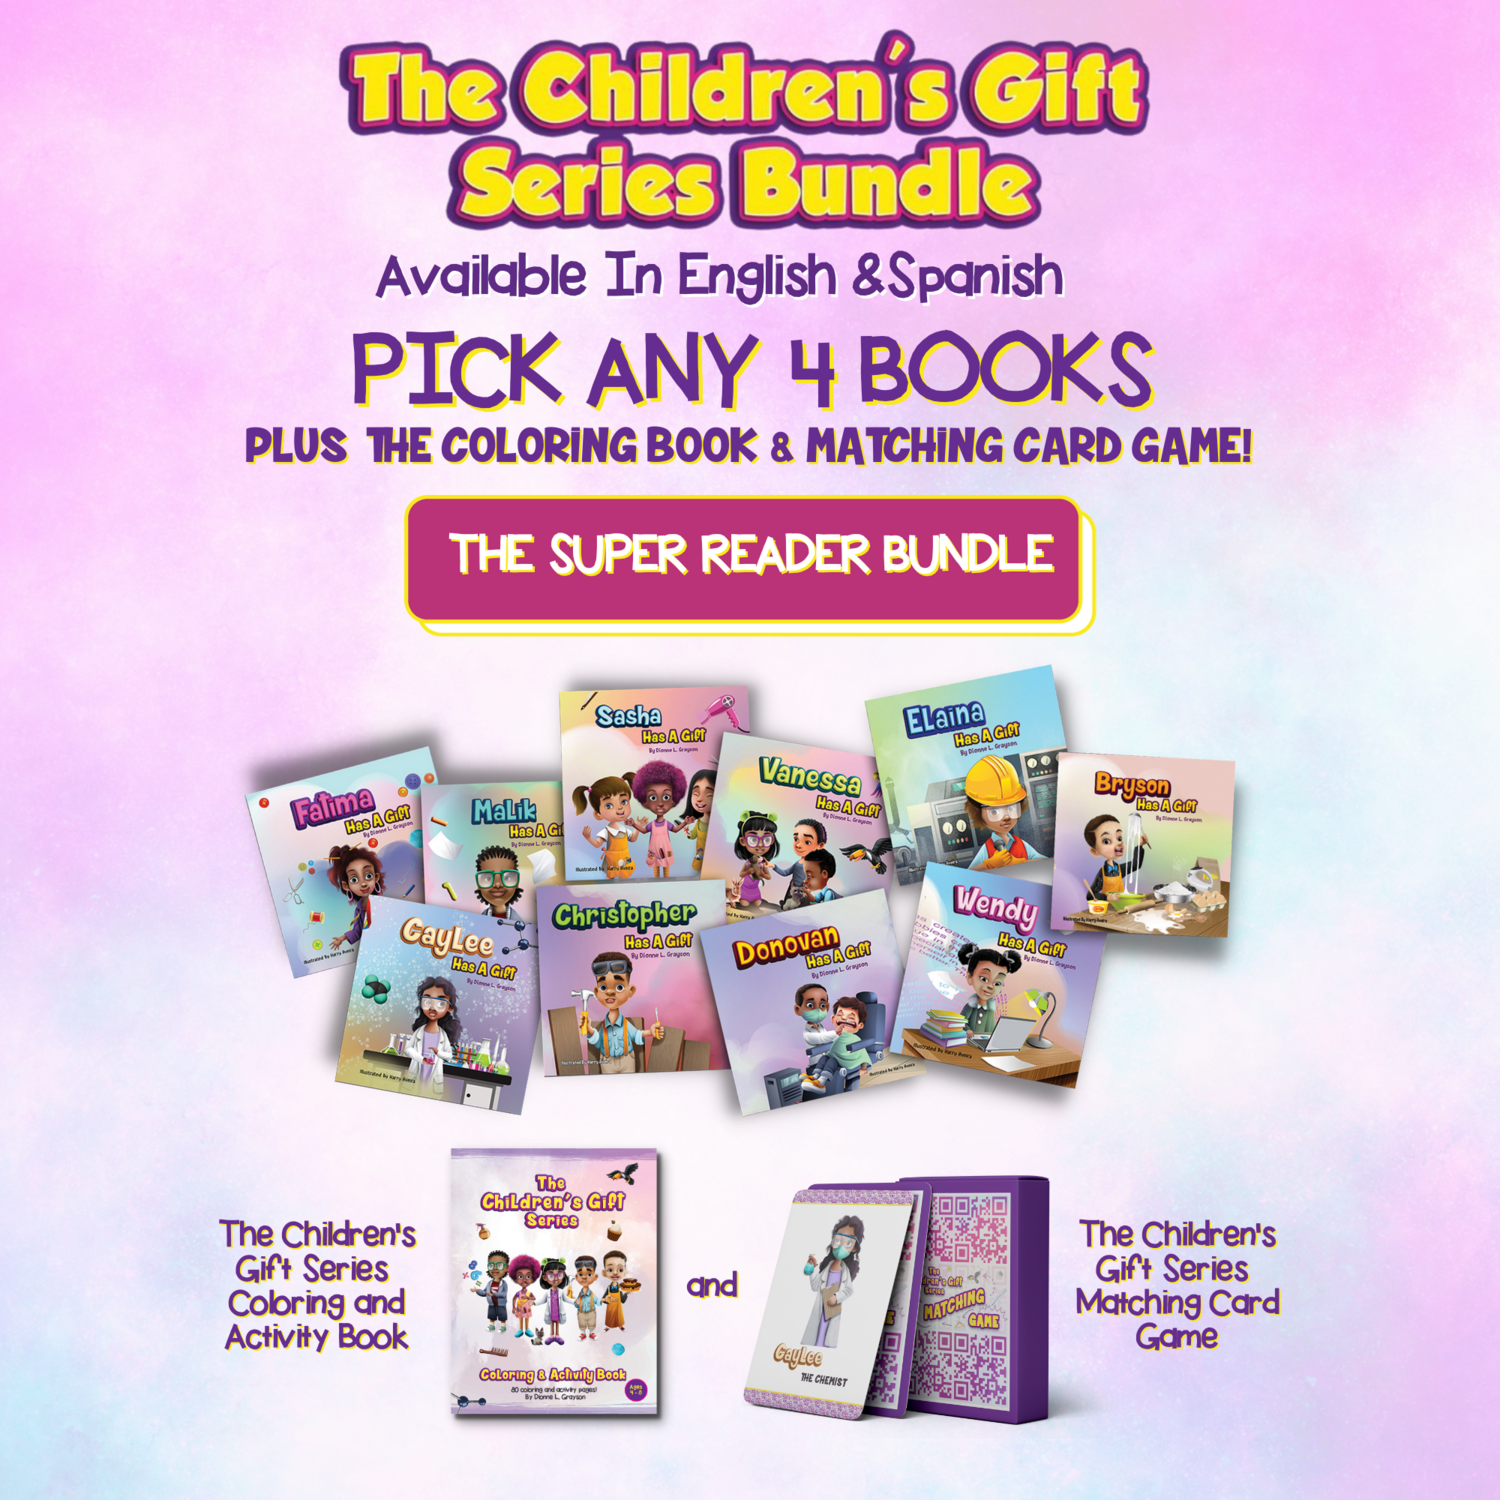 The Children's Gift Series Super Reader Bundle